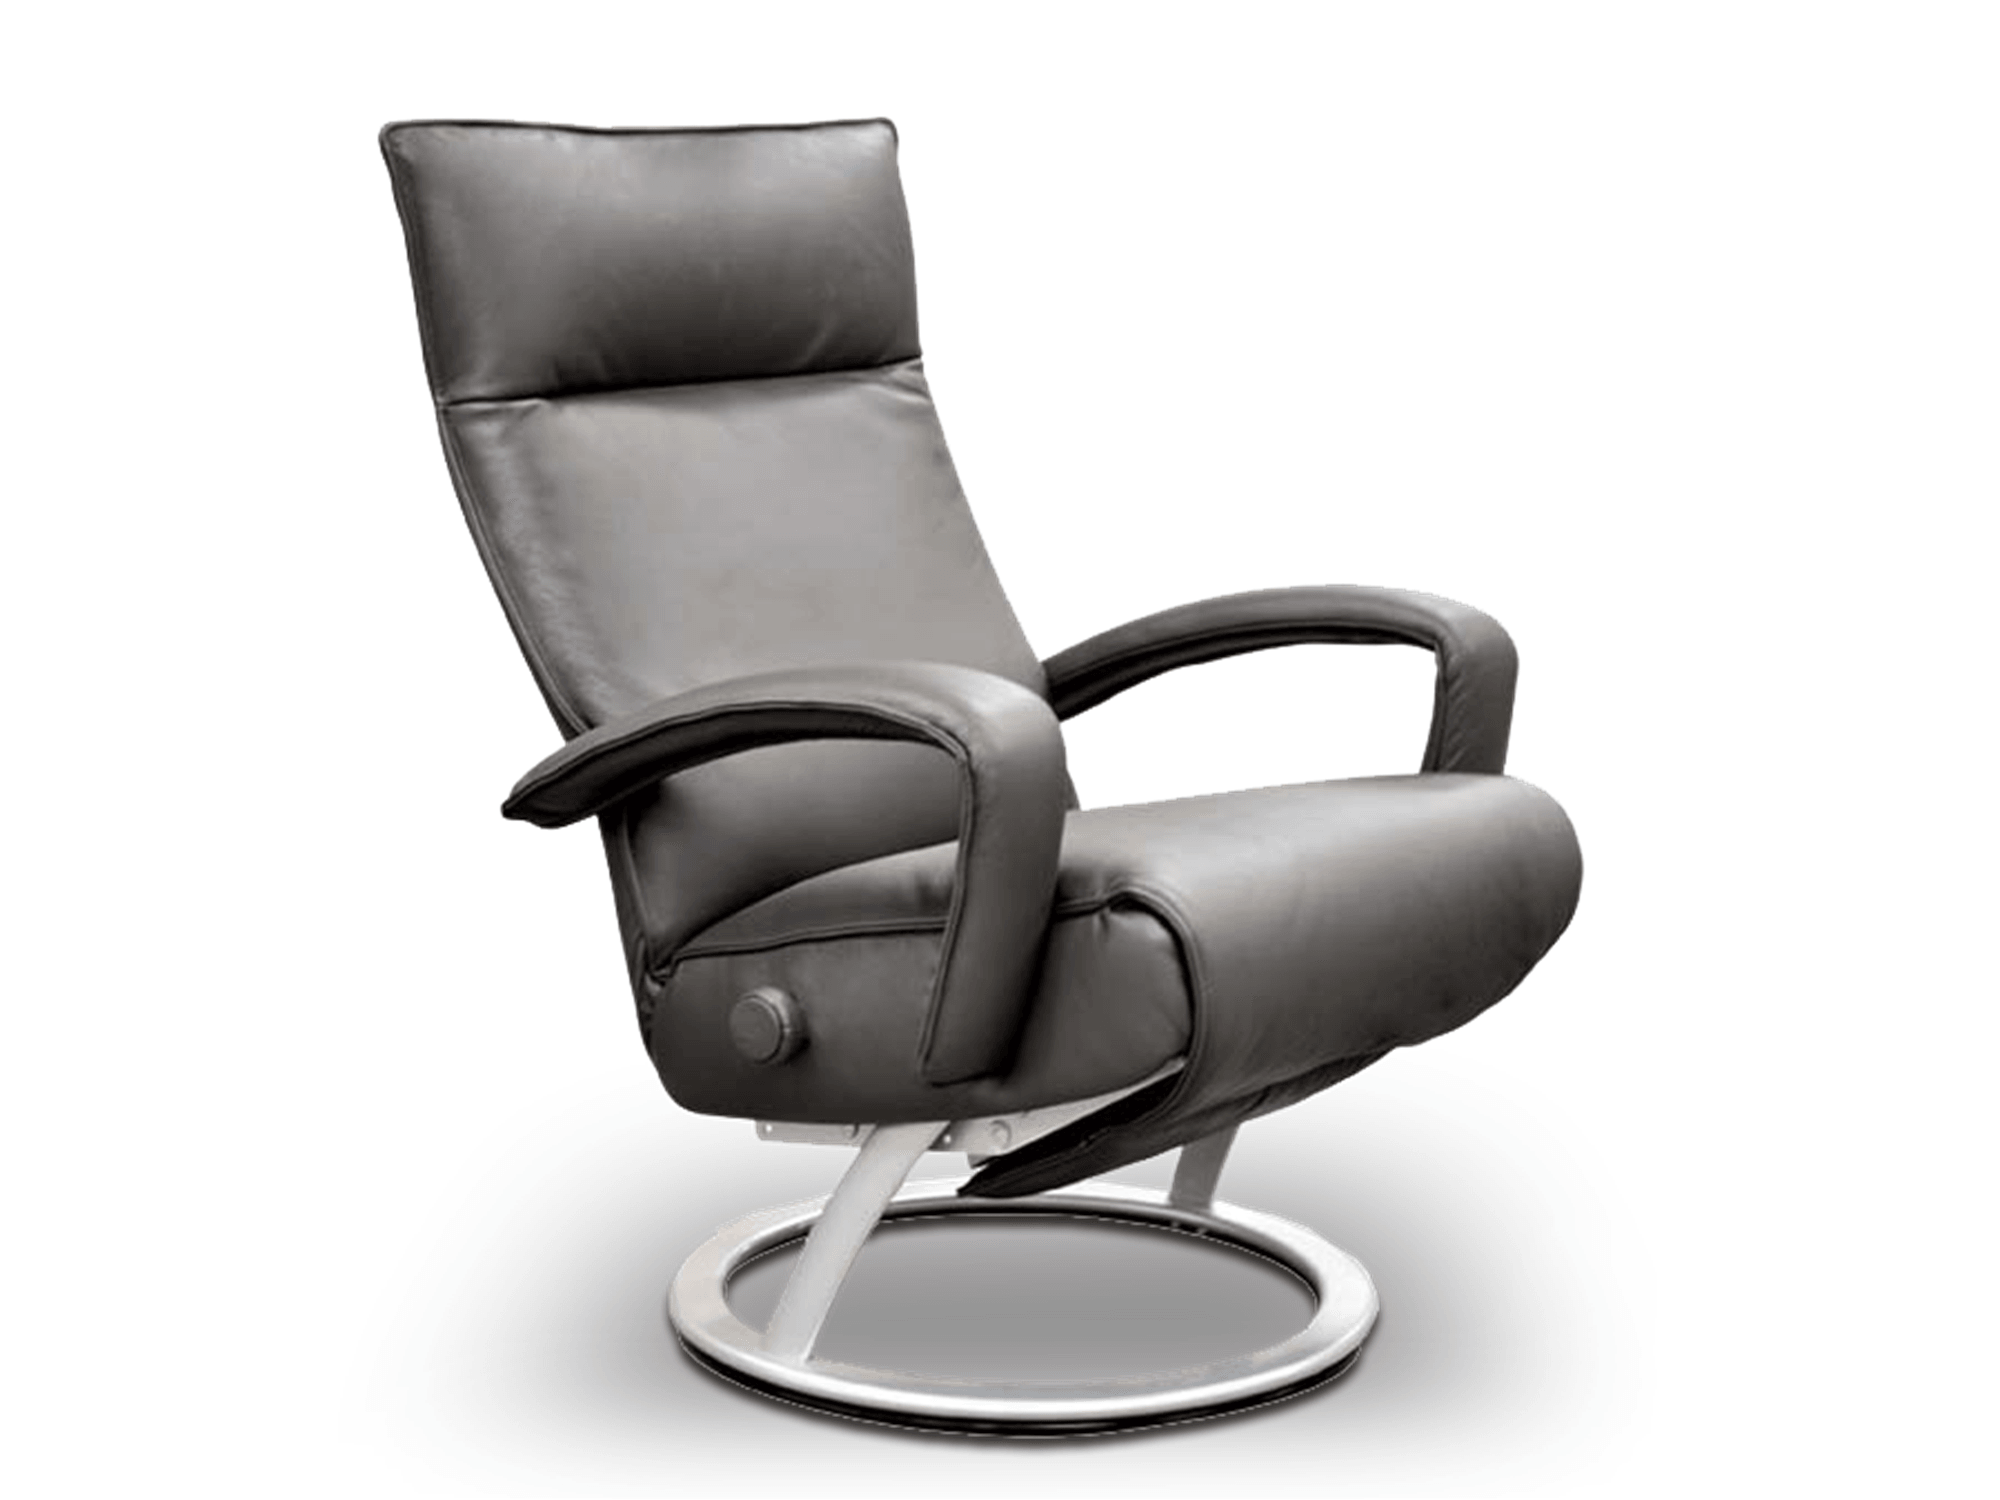 Gaga Chair - Euro Living Furniture